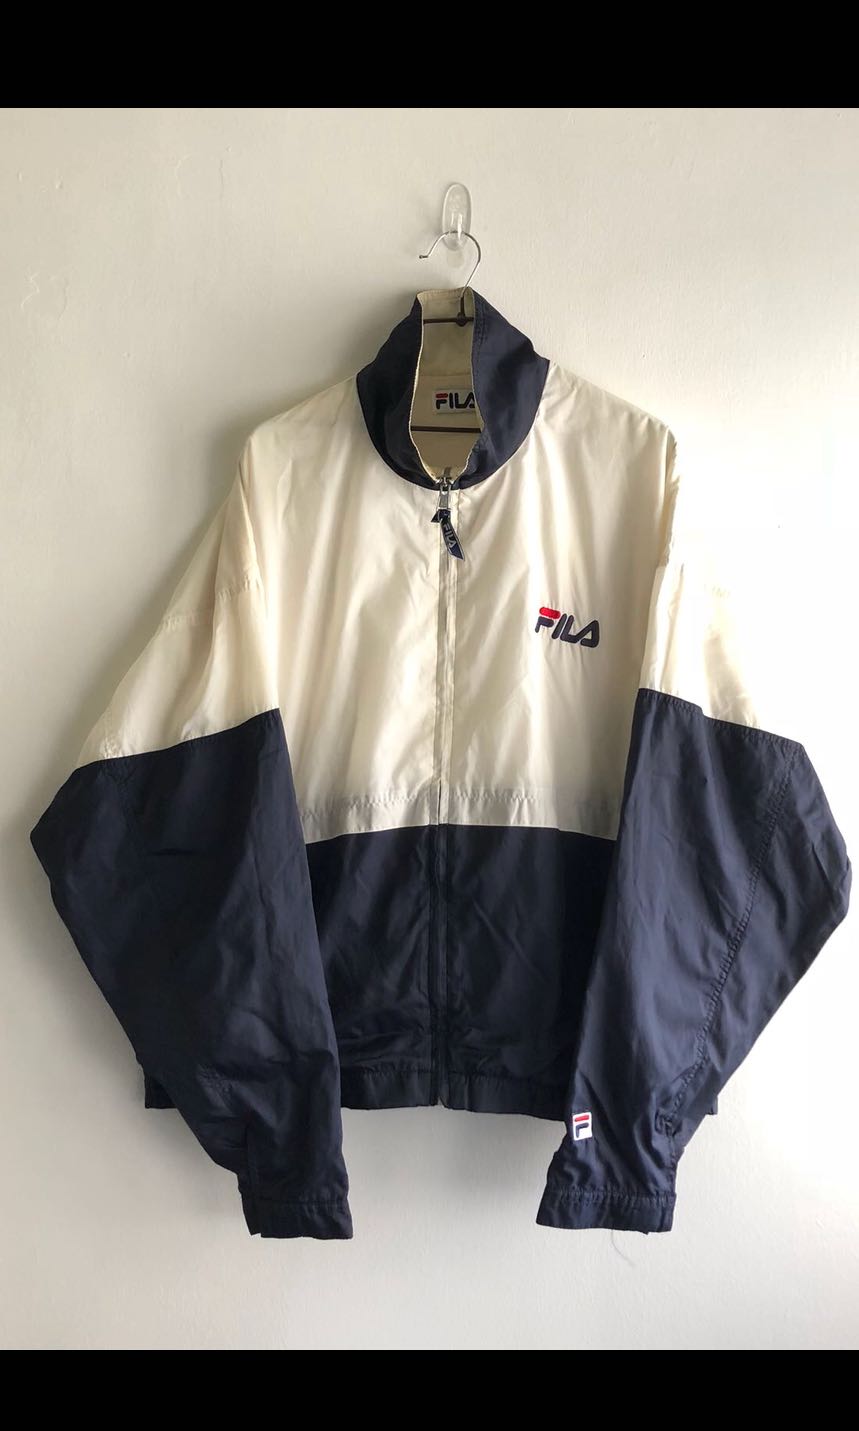 fila vintage jacket